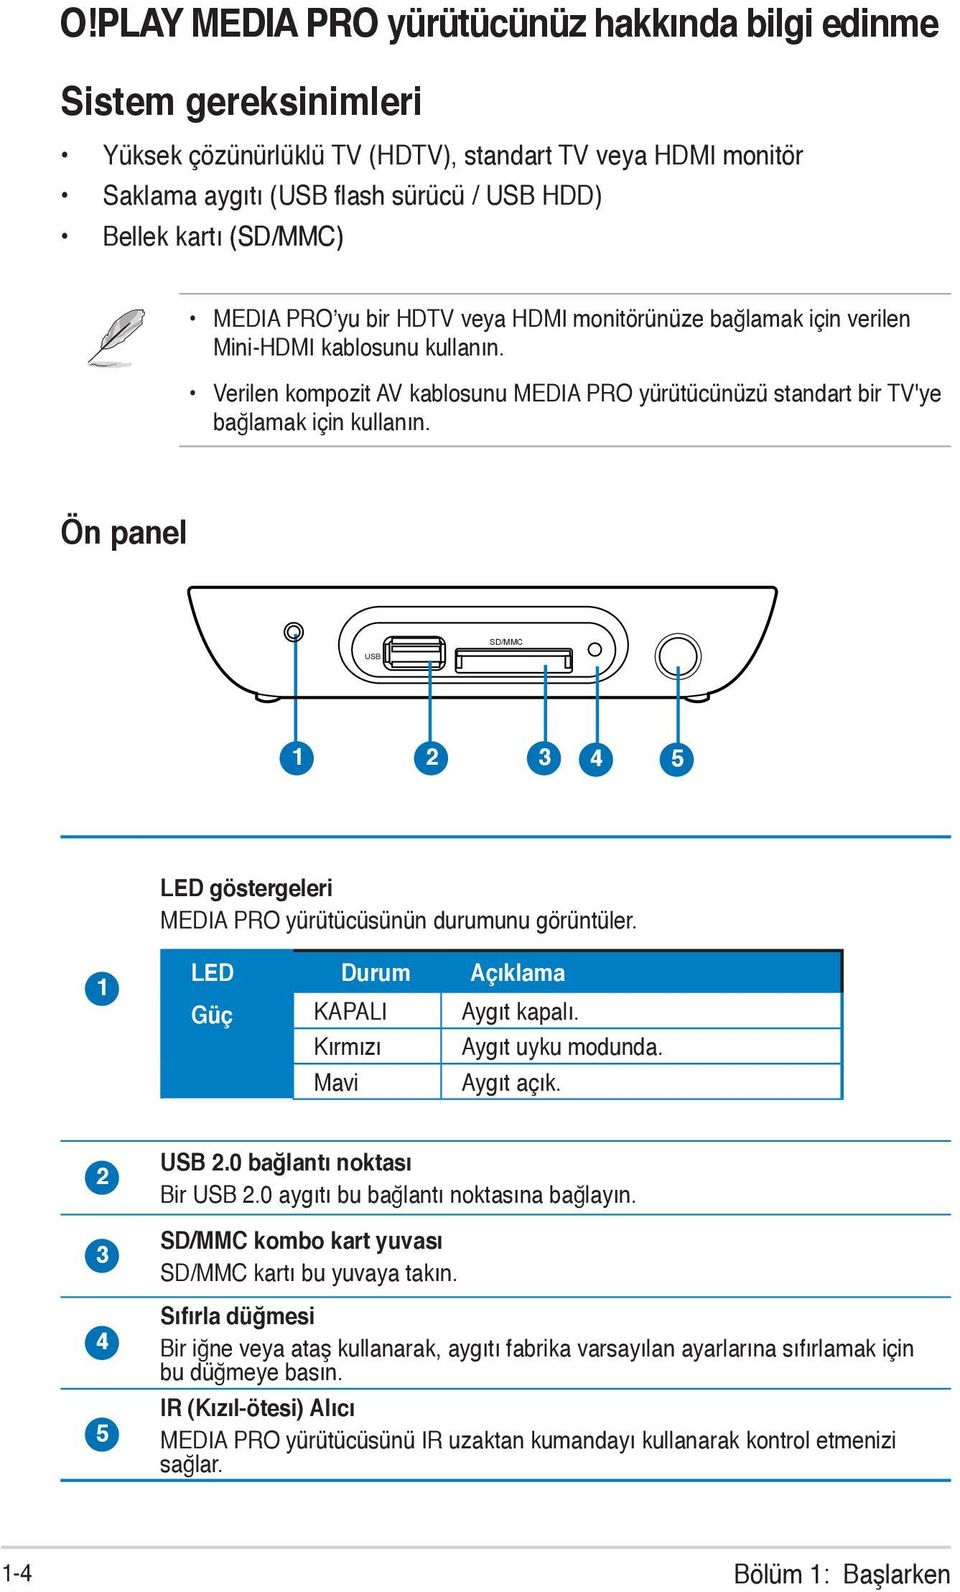 Ön panel USB SD/MMC 1 2 3 4 5 LED göstergeleri MEDIA PRO yürütücüsünün durumunu görüntüler. 1 LED Durum Açıklama Güç KAPALI Aygıt kapalı. Kırmızı Aygıt uyku modunda. Mavi Aygıt açık. 2 3 4 5 USB 2.